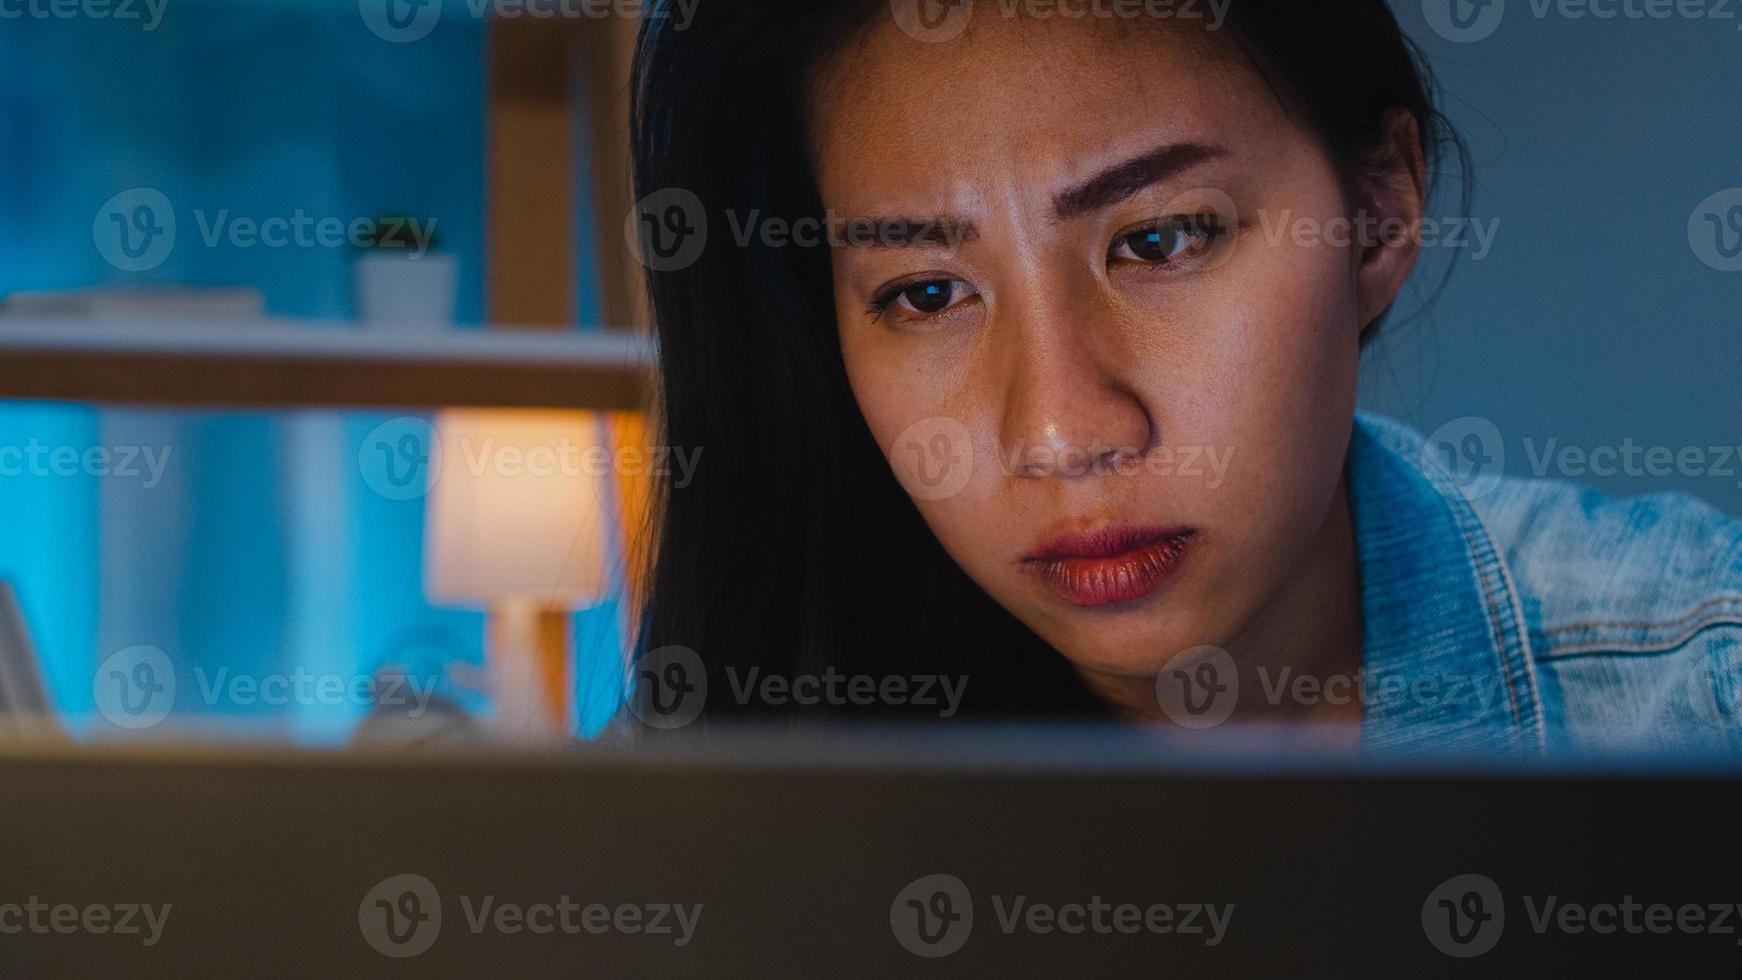 milenar jovem empresária chinesa trabalhando tarde da noite estressada com um problema de pesquisa de projeto no laptop na sala de estar em uma casa moderna. conceito de síndrome de burnout ocupacional de povos da Ásia. foto